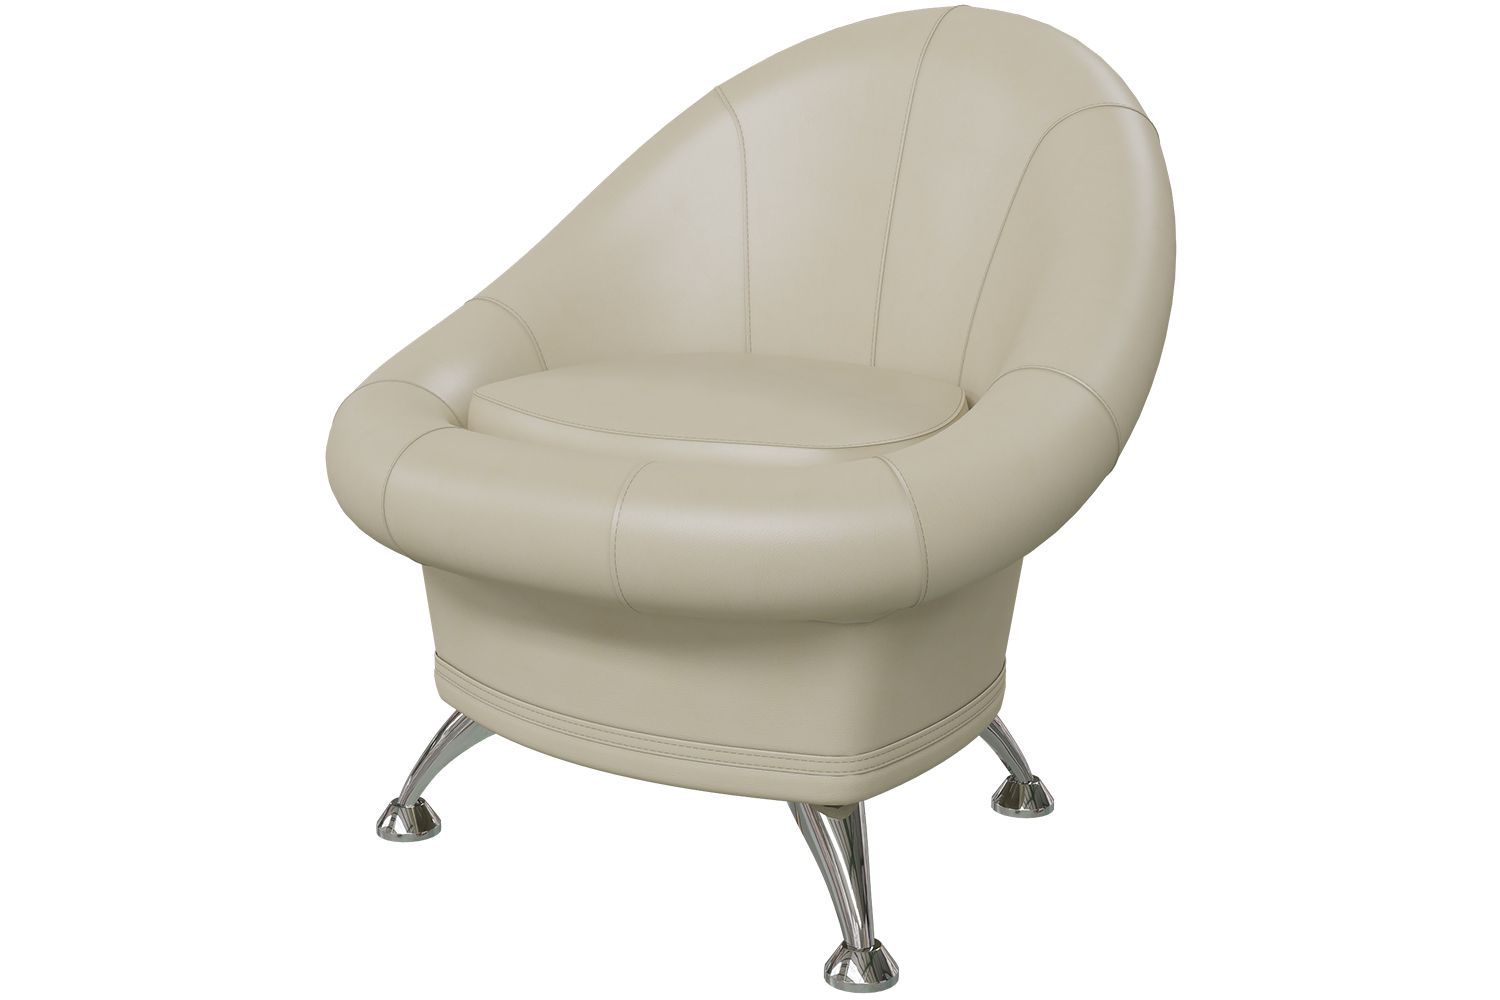 Банкетка-кресло (кожзам ЭКО) 6-5104  за 7190 руб  .